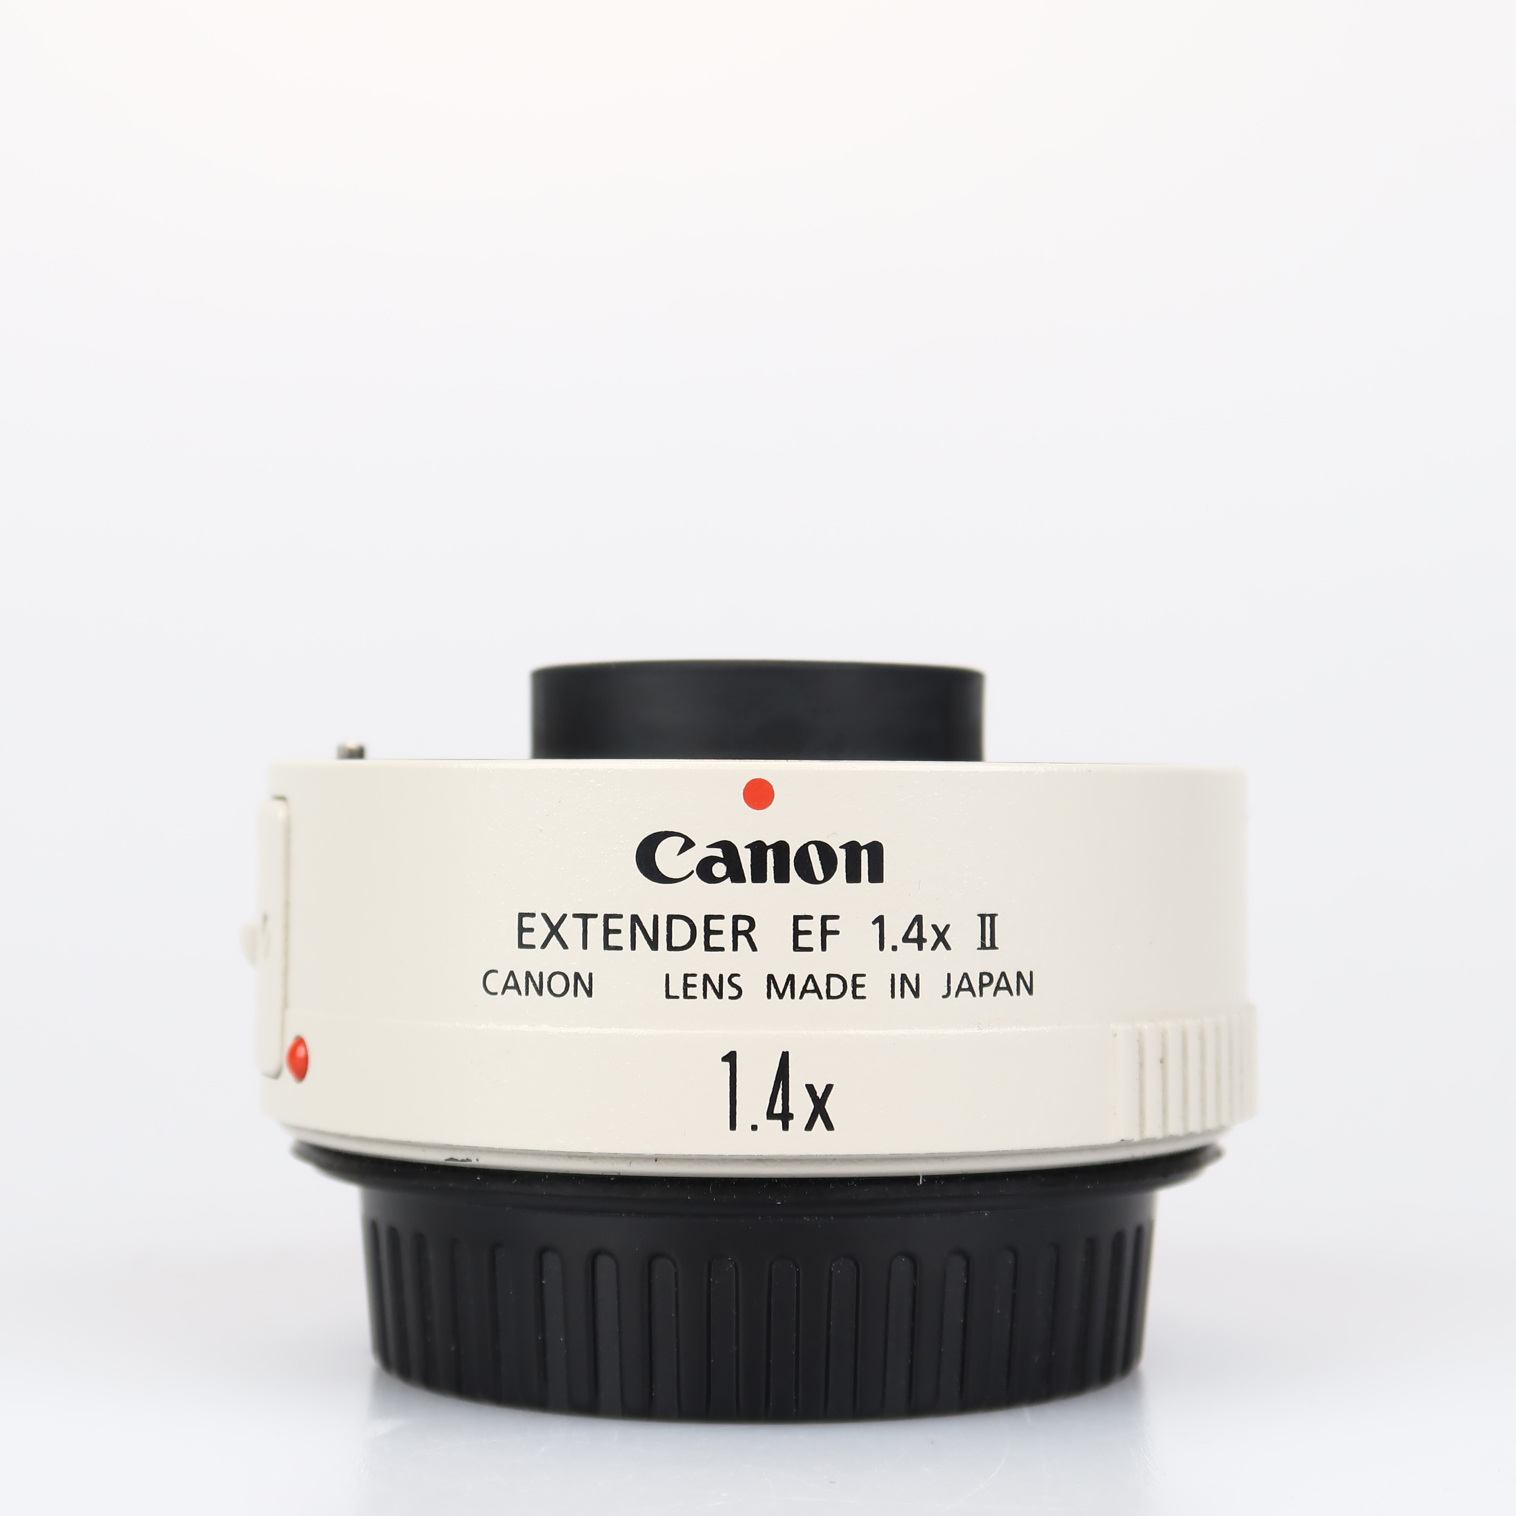 Canon Extender EF 1.4x II (käytetty)